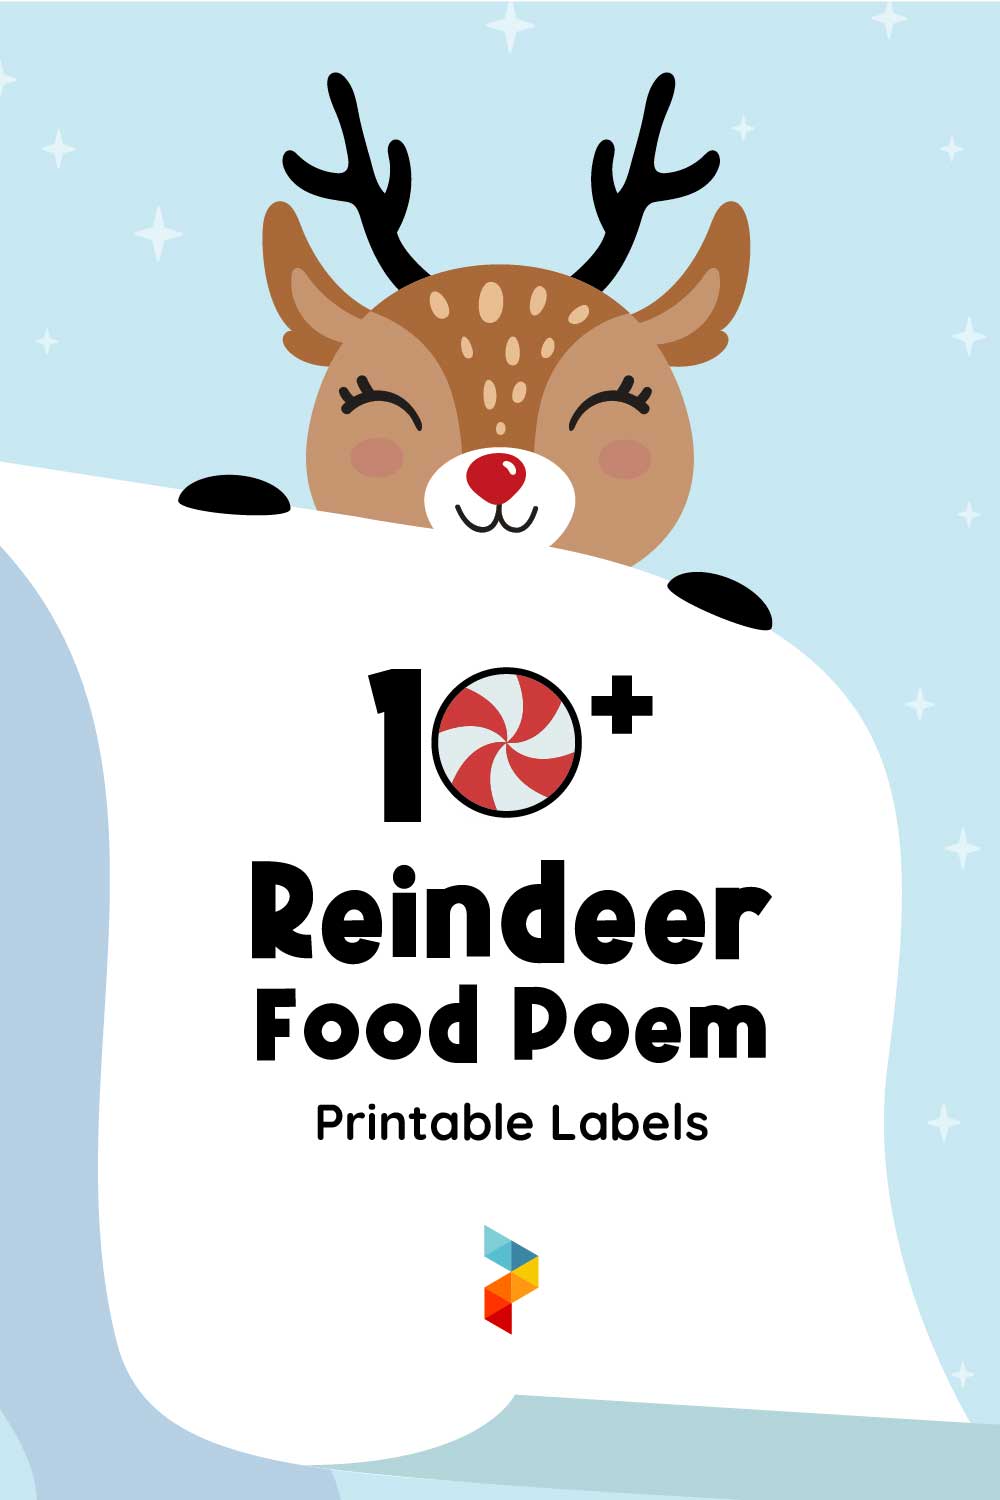 Reindeer Food Poem Labels